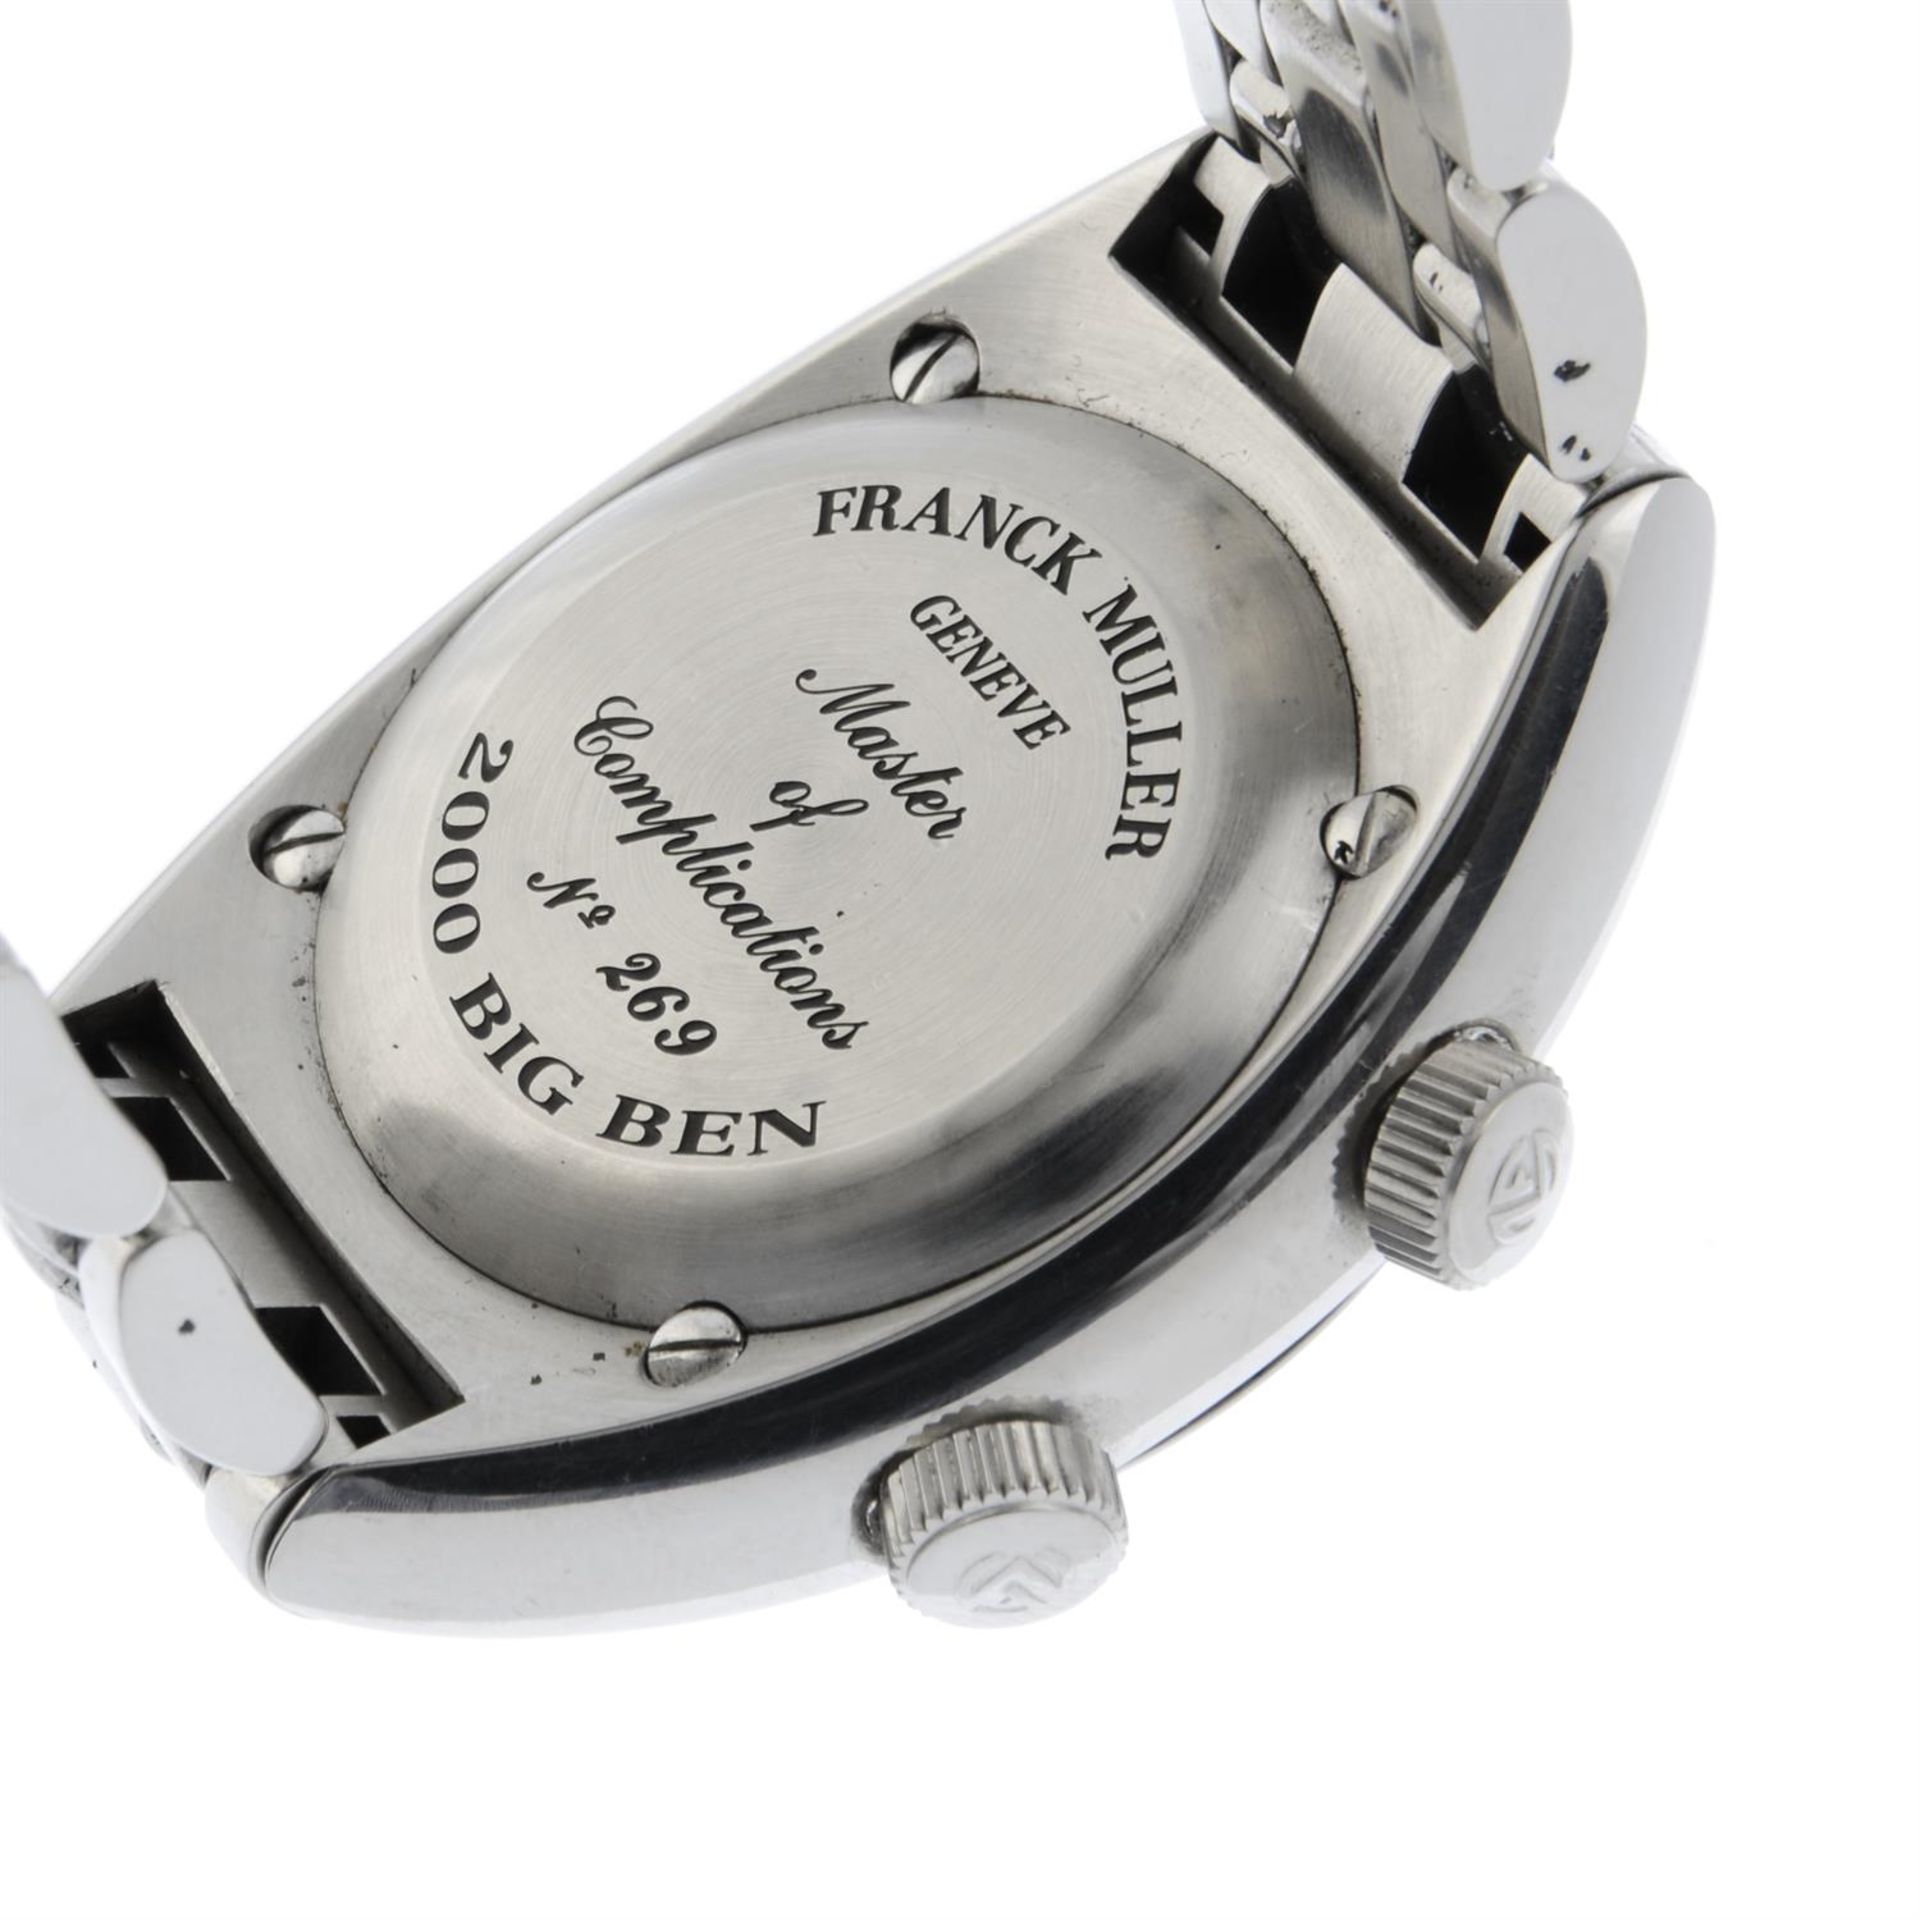 FRANCK MULLER - a stainless steel TransAmerica 2000 Big Ben GMT alarm bracelet watch, 40mm. - Image 5 of 7